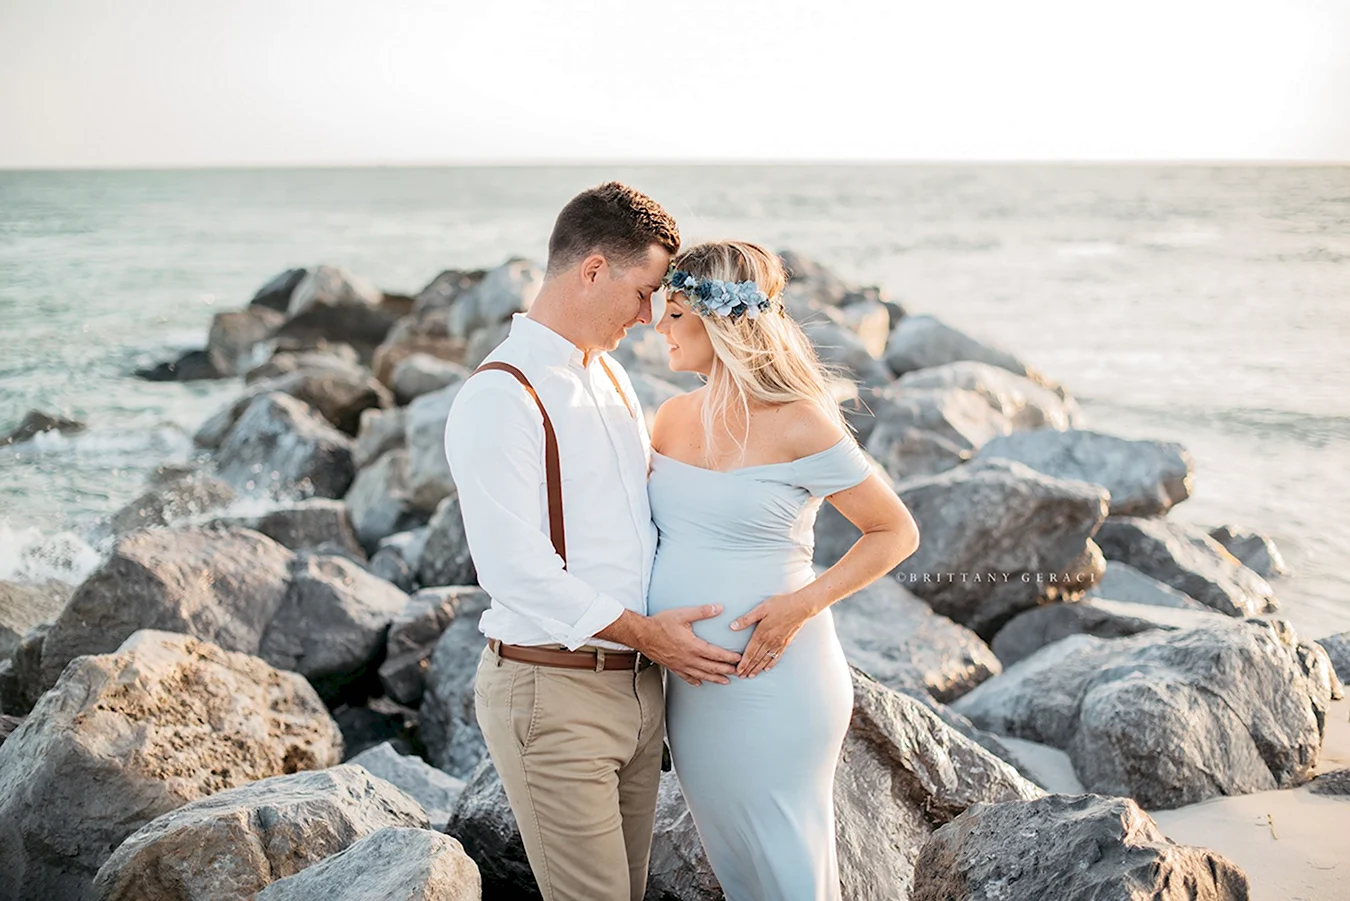 Фотосессия беременных с мужем на море